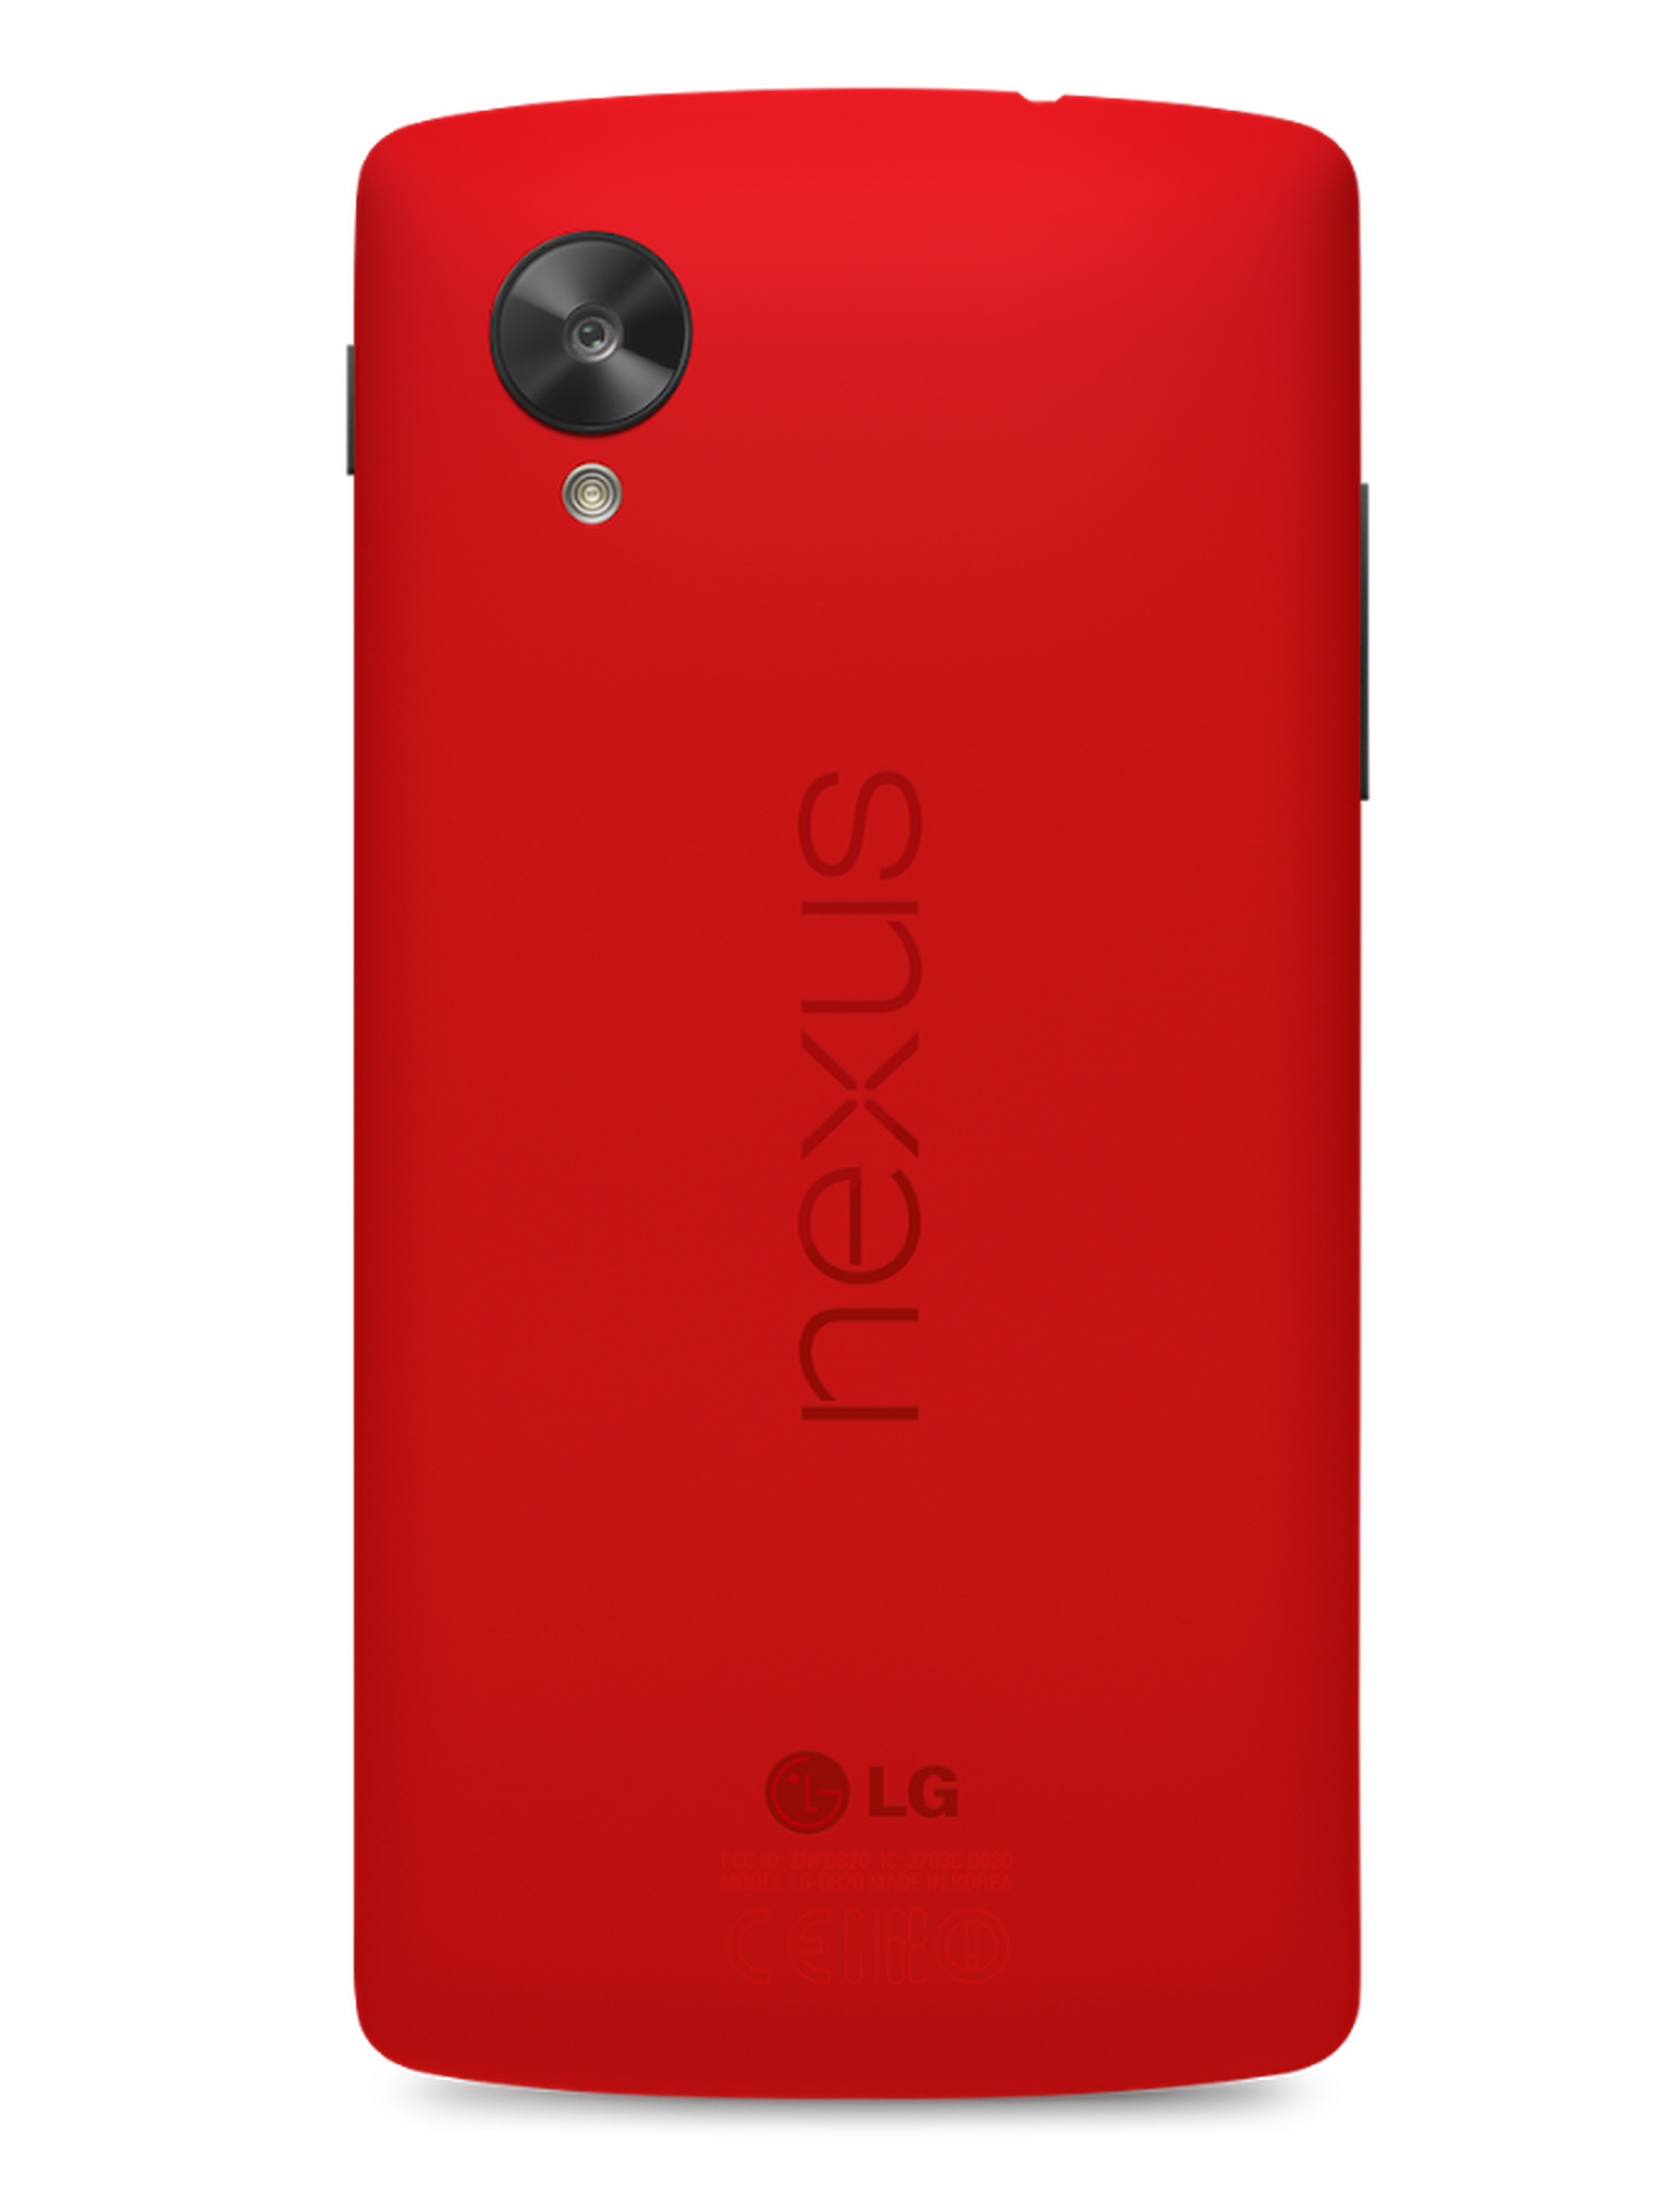 LG Nexus 5 in red